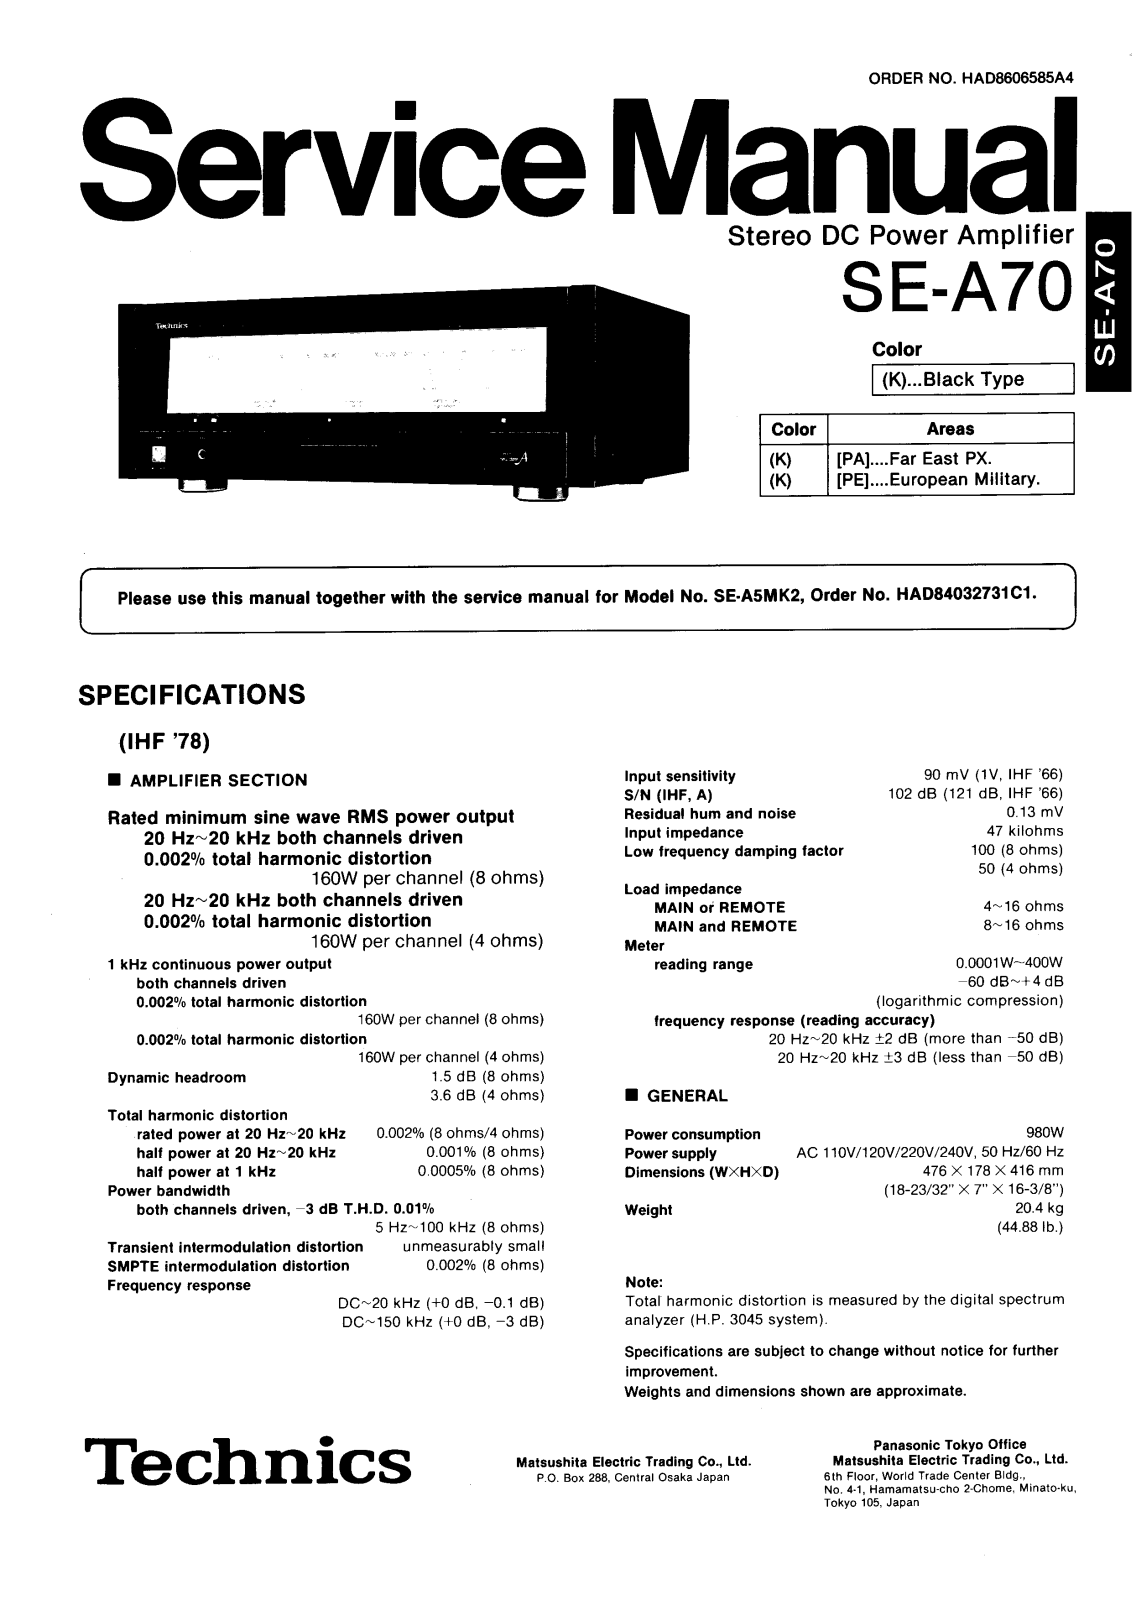 Technics SEA-70 Service manual